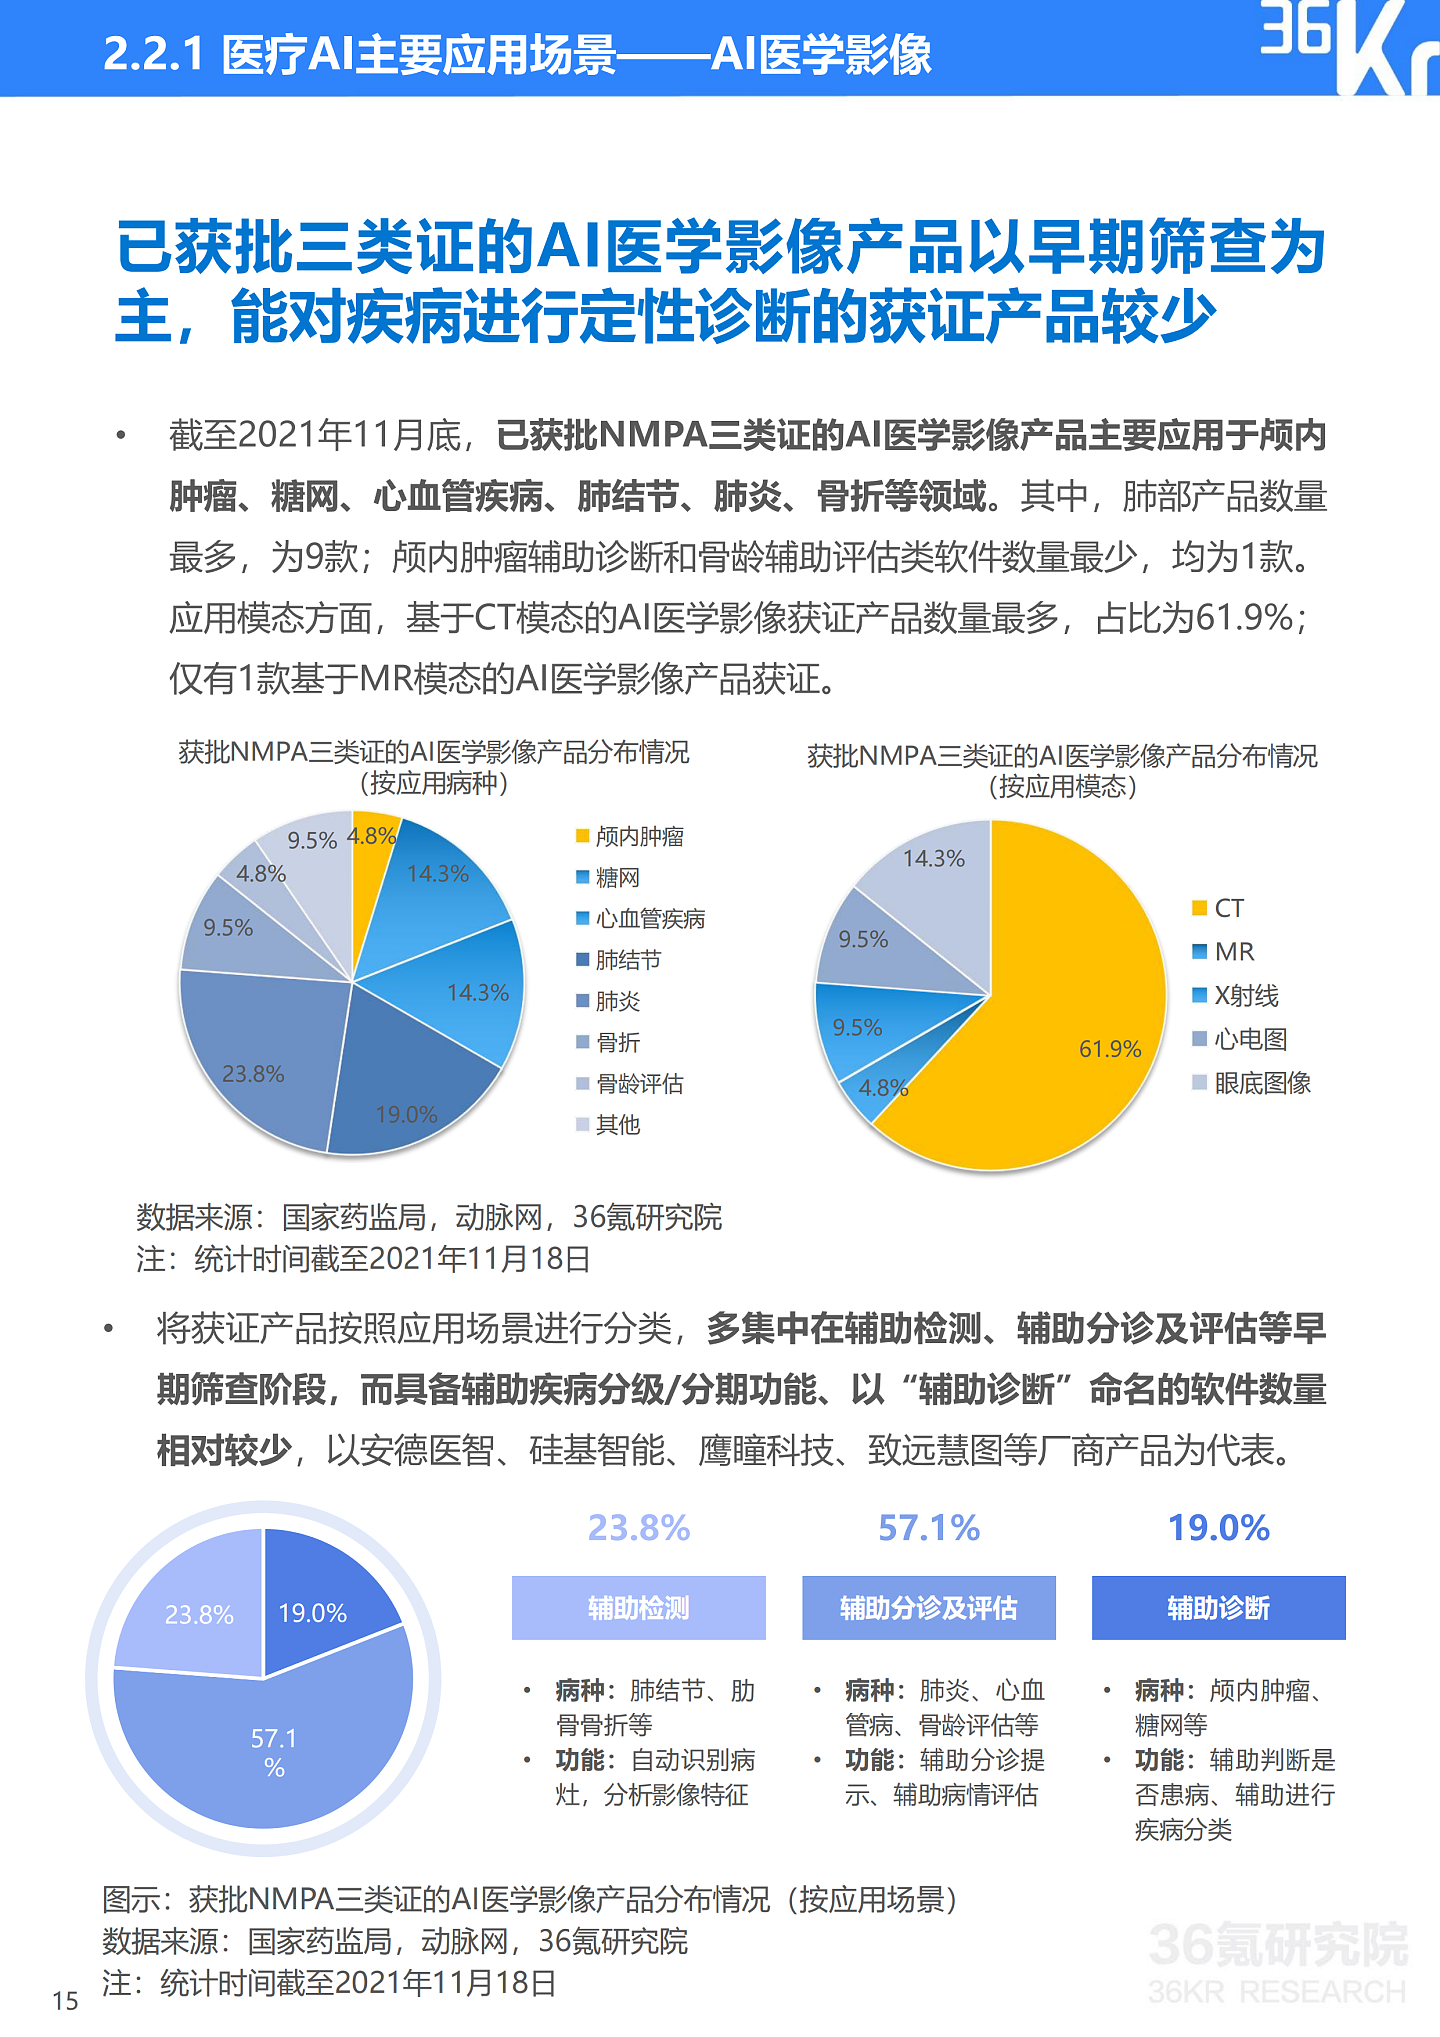 36氪研究院 | 2021年中国医疗AI行业研究报告 - 18